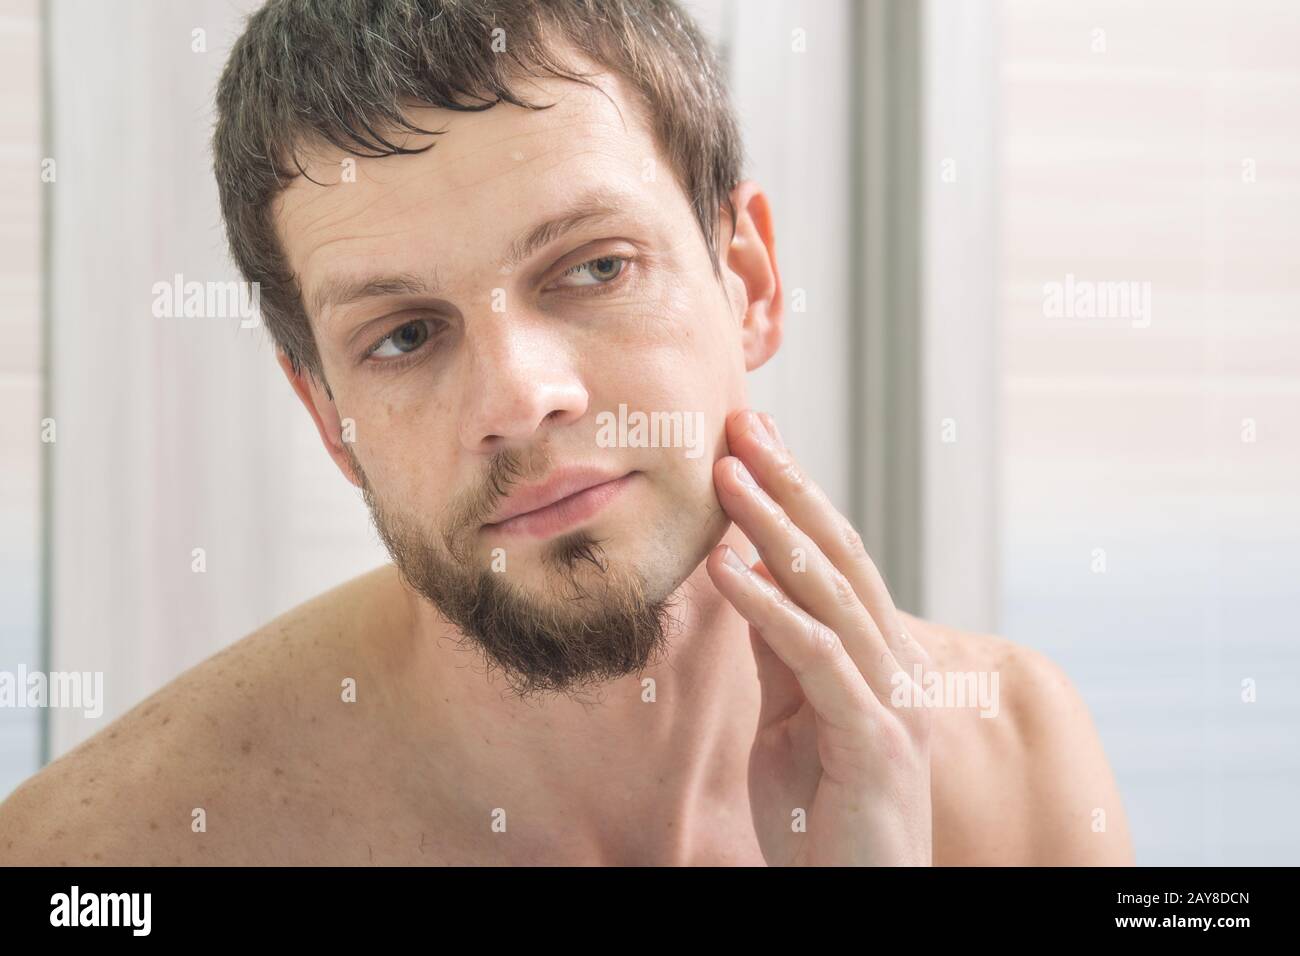 Le mec rasé la moitié de son visage et regarde dans le miroir l'évaluation du résultat Banque D'Images